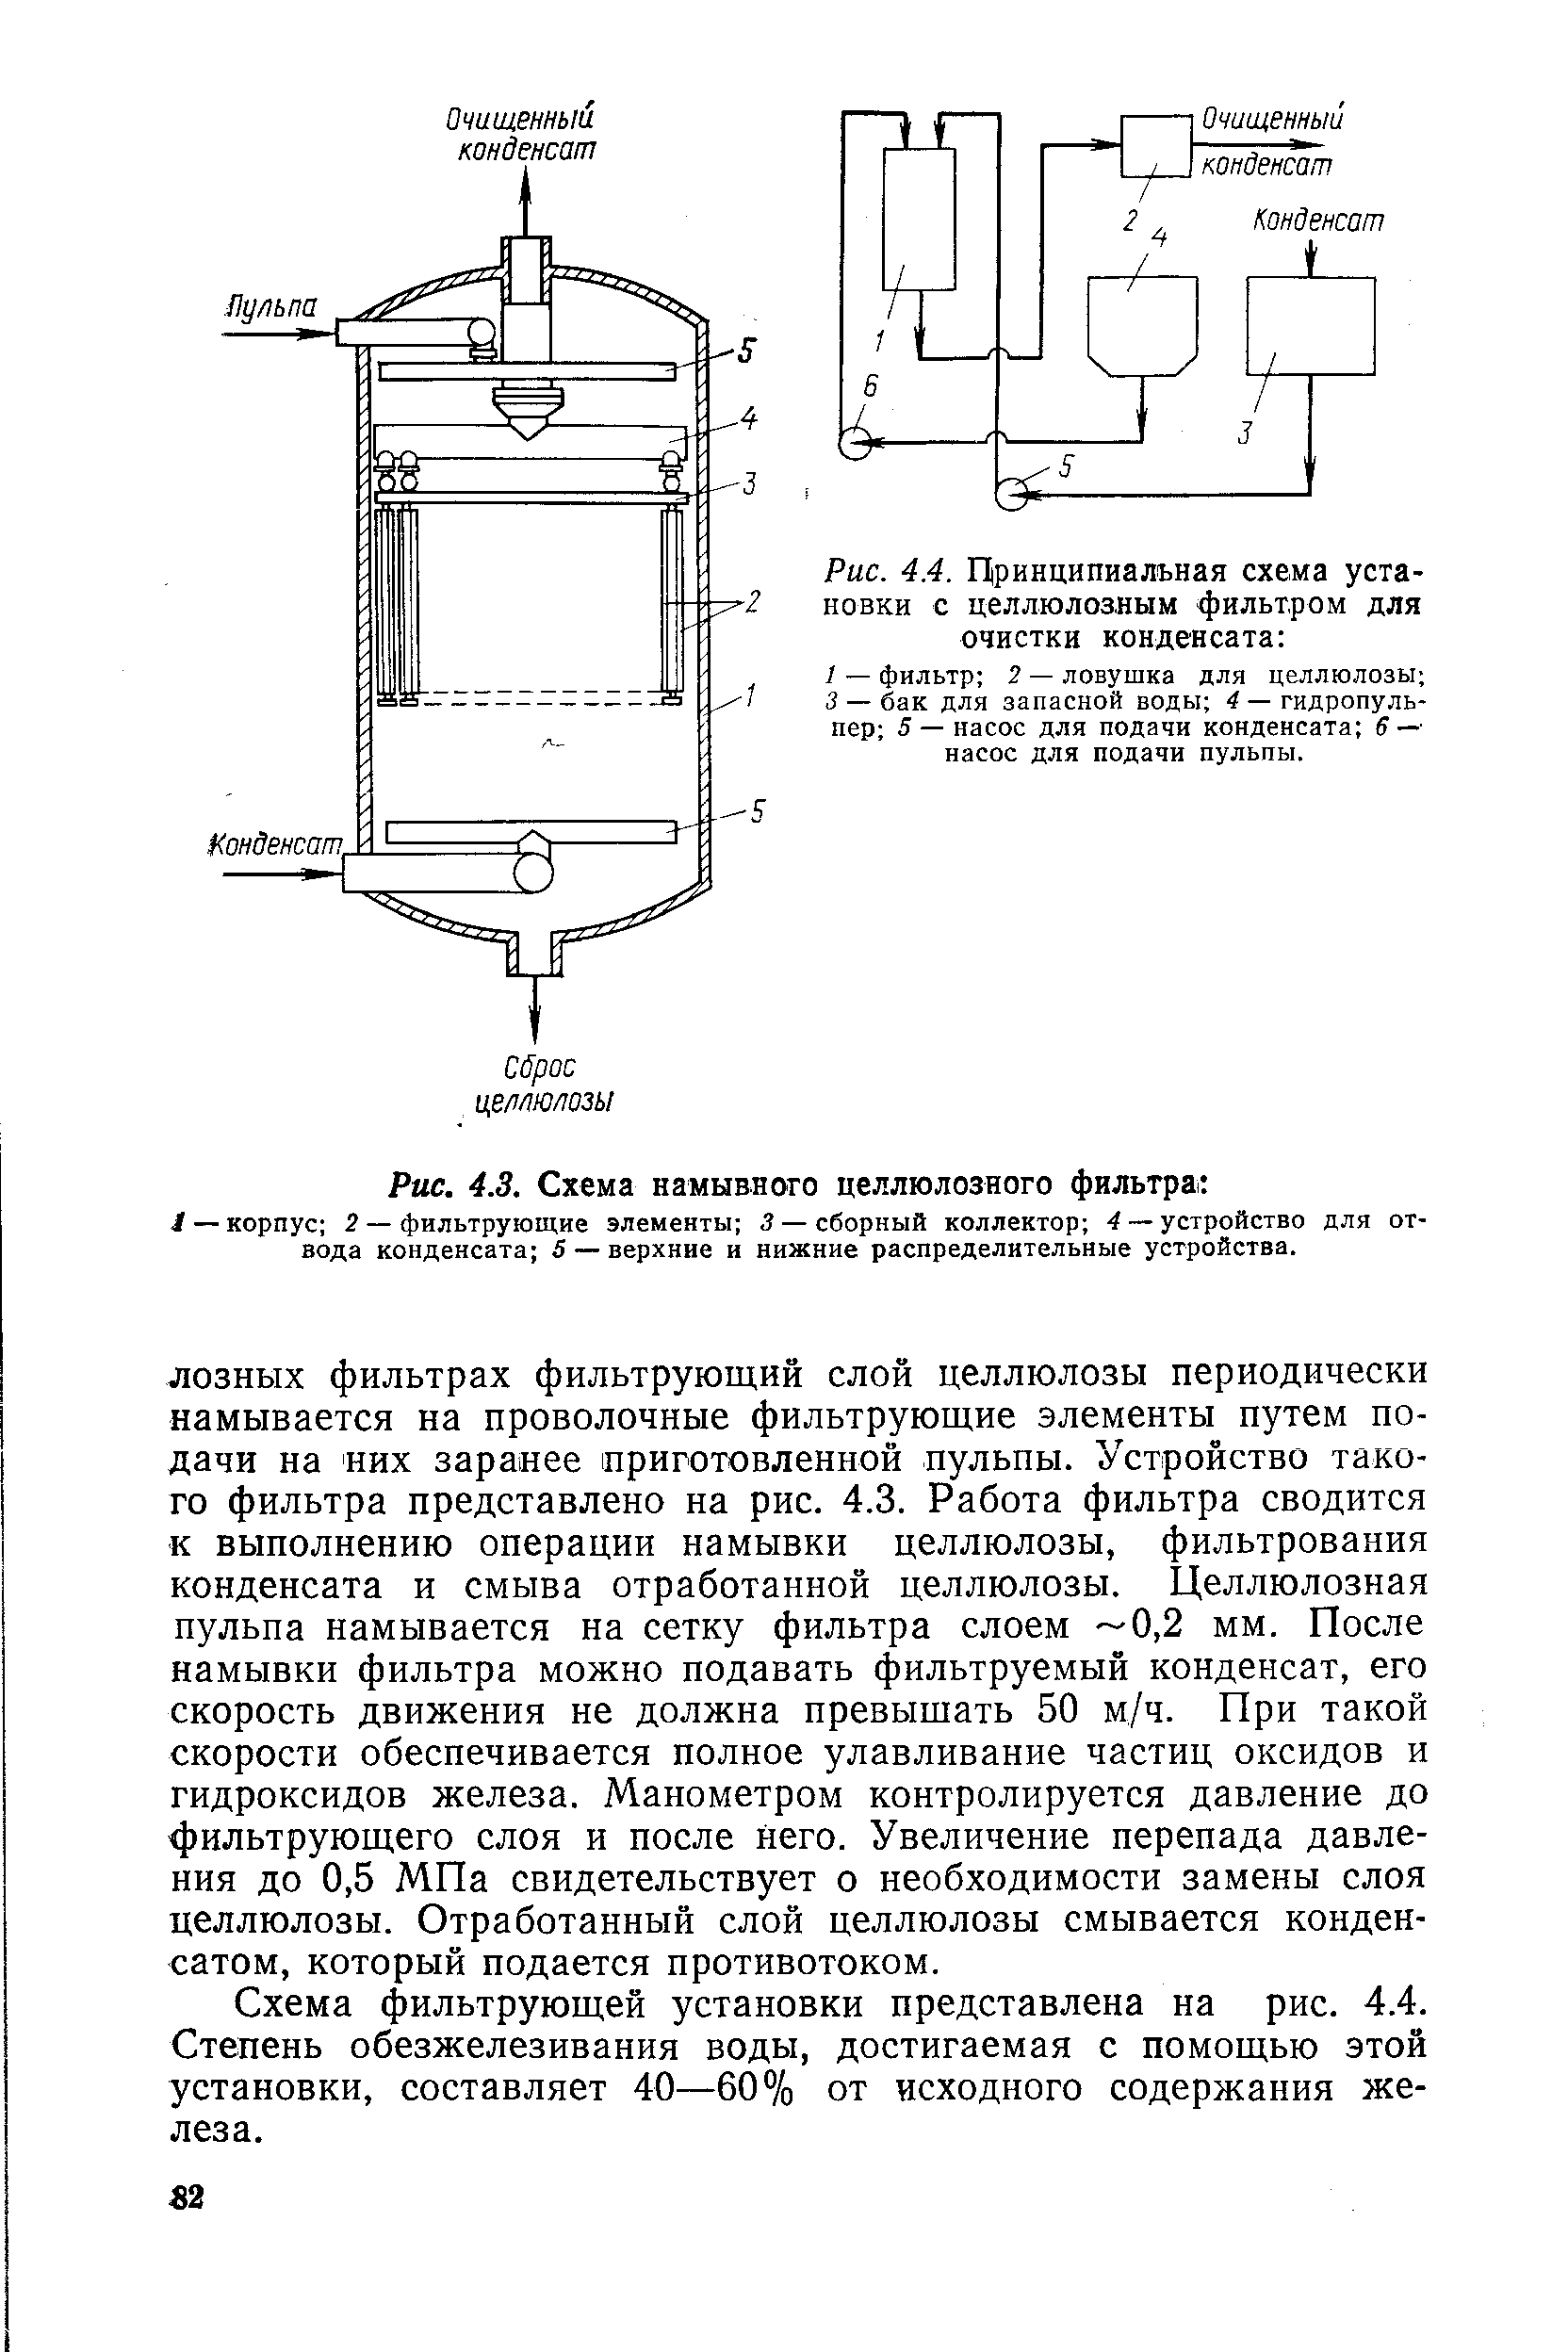 Рис. 4.4. Цринципиалъная схема установки с целлюлозным фильтром для очистки конденсата 
